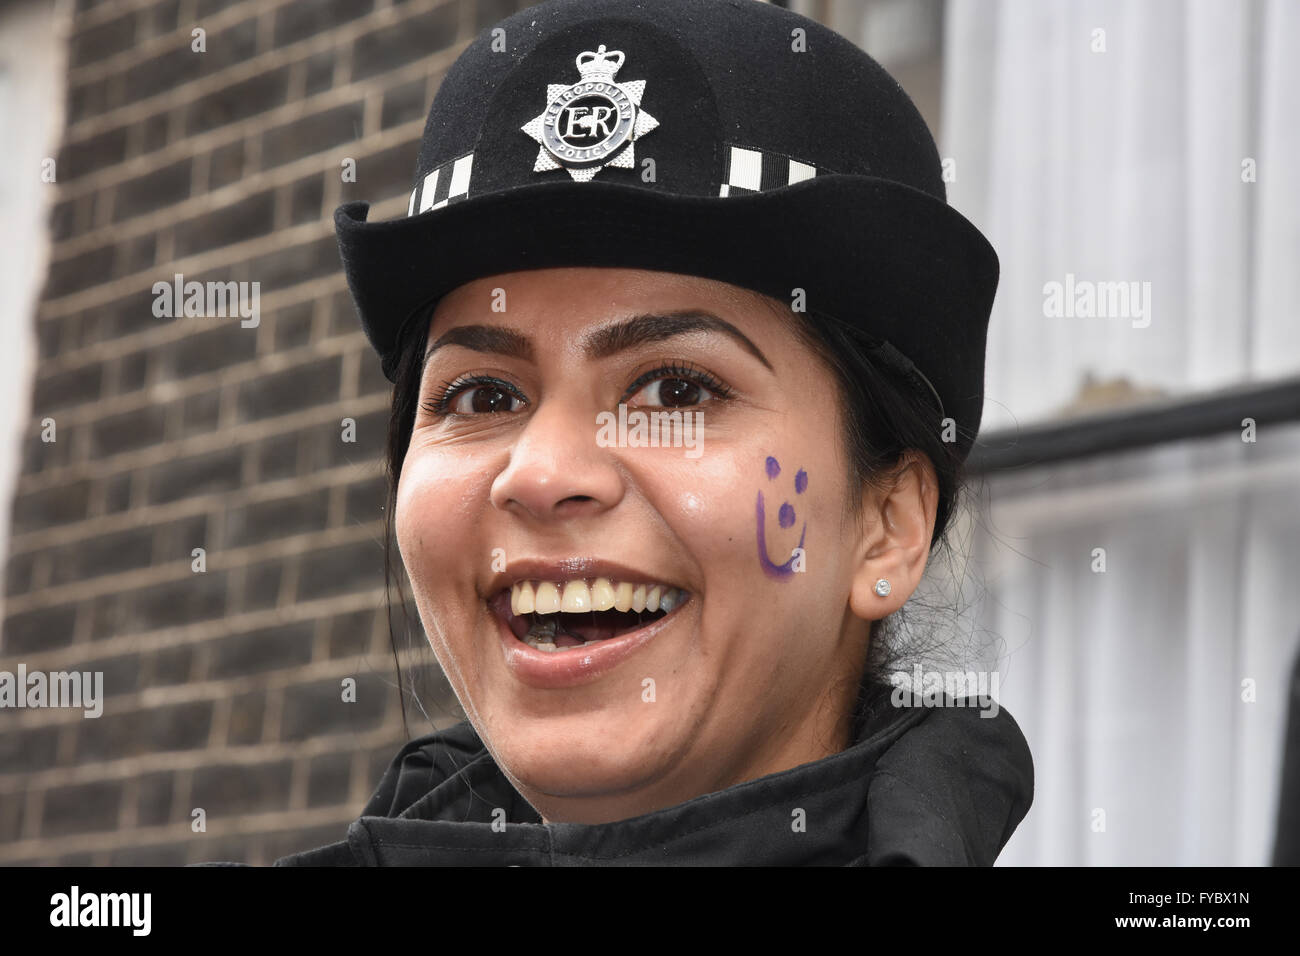 Lächelnd weibliche Gemeinschaft Liaison Polizeioffizier, mit Smiley Malerei auf ihrer Wange, Anti Sparmaßnahmen März, Gower Street, London, UK Stockfoto